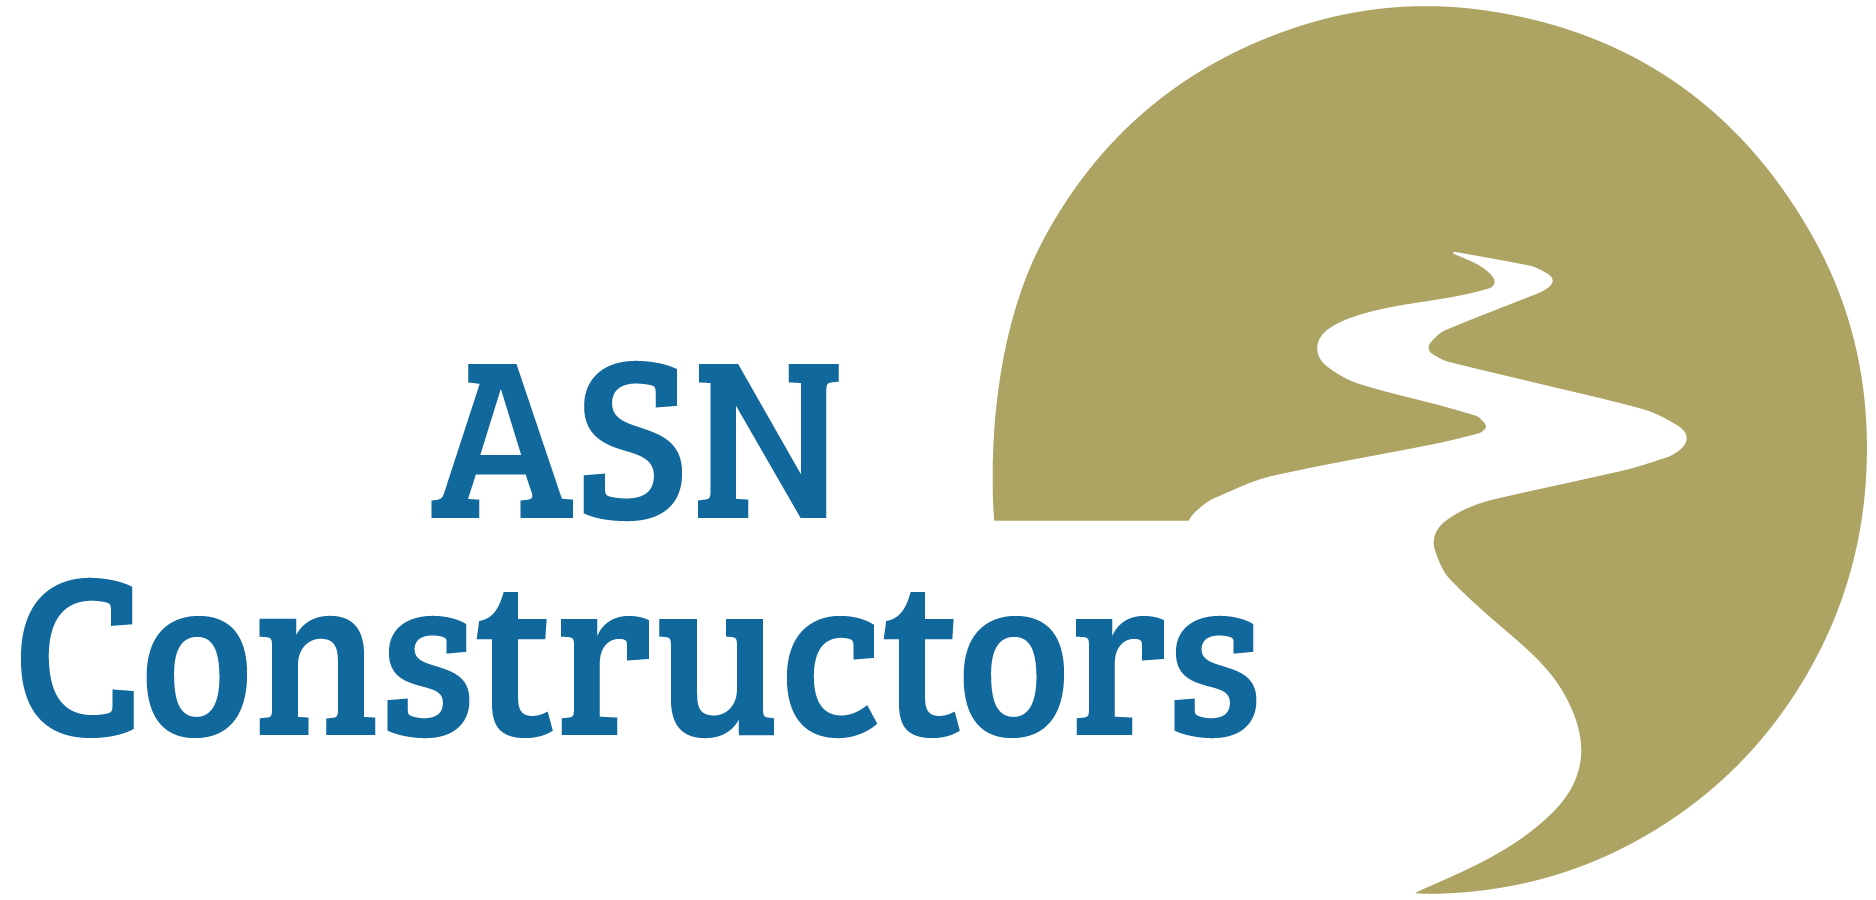 ASN_Constructors (2).png